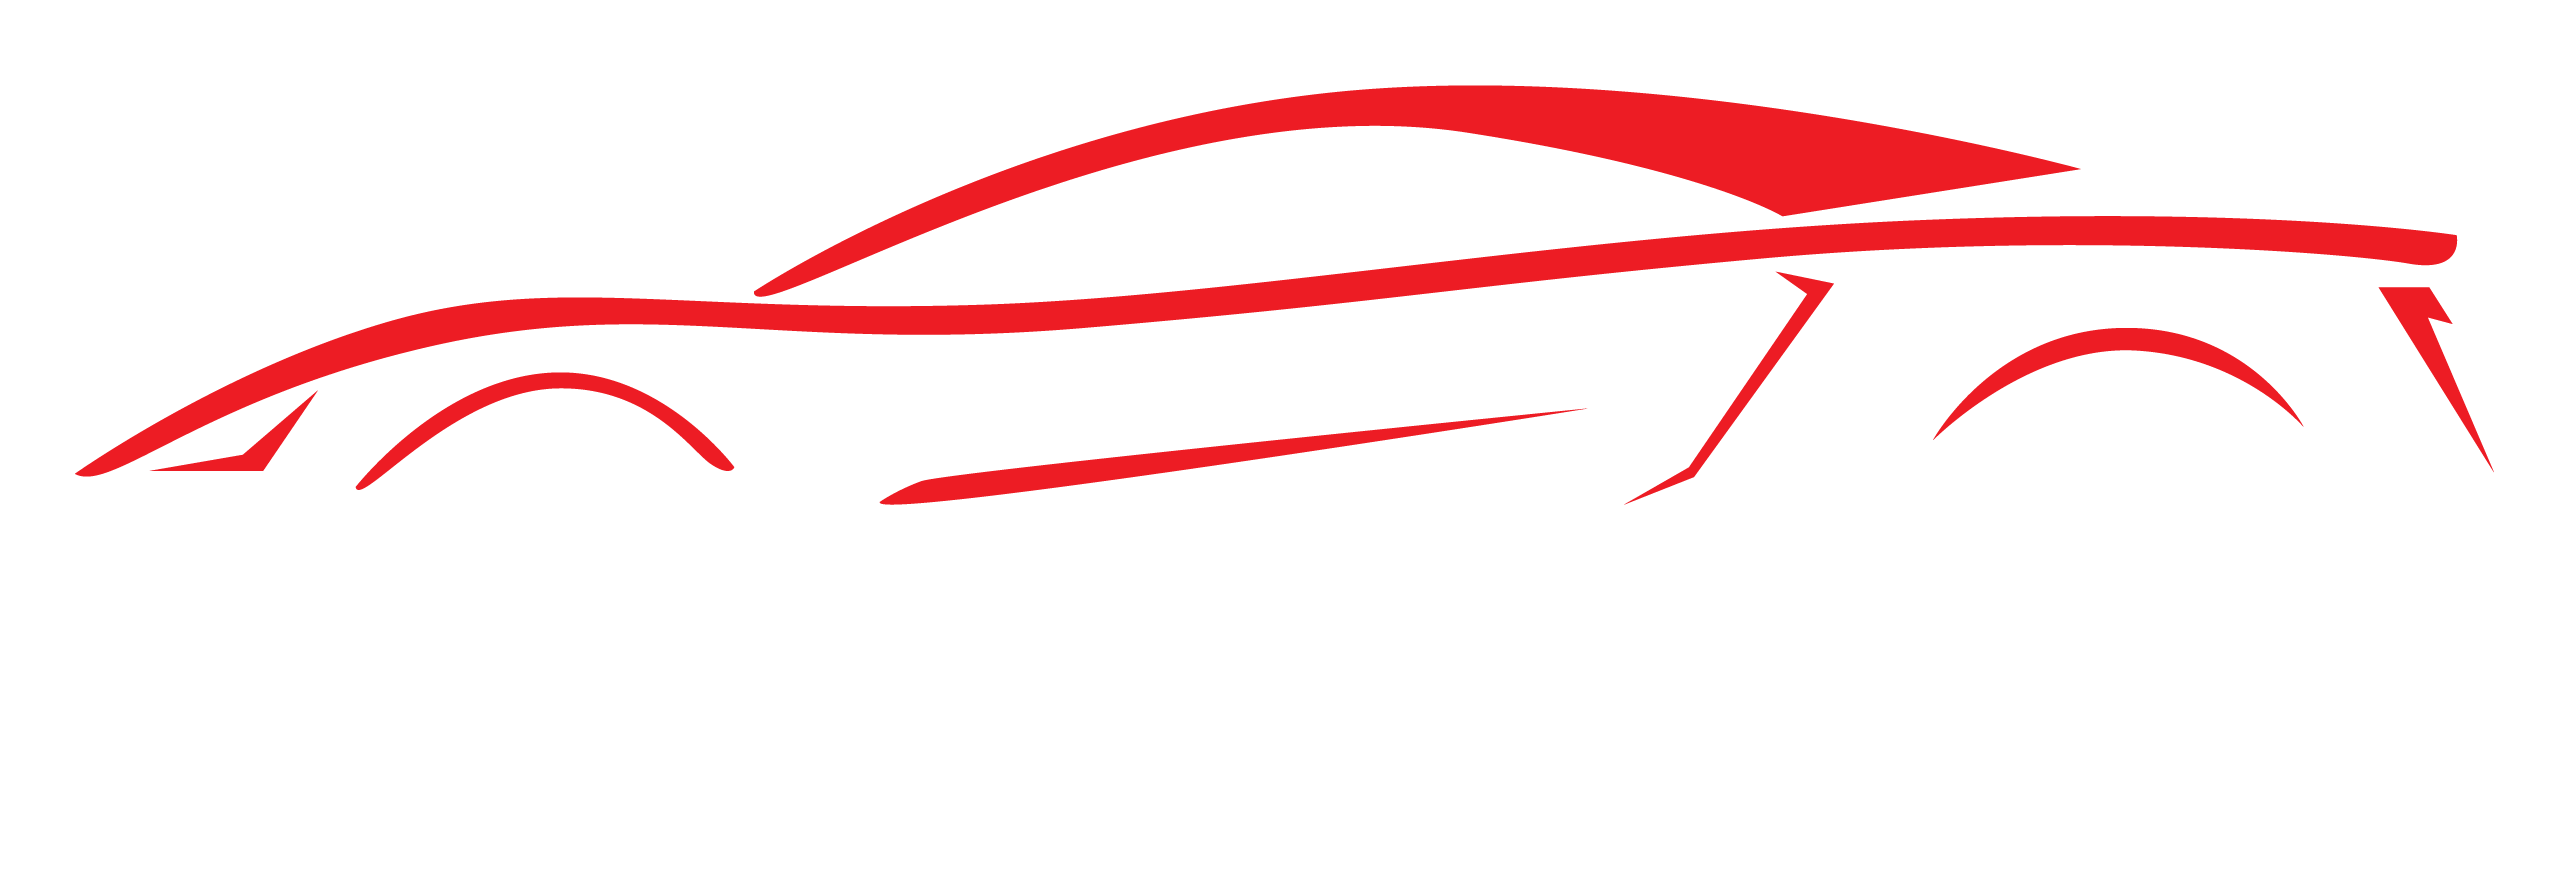 Motor Master